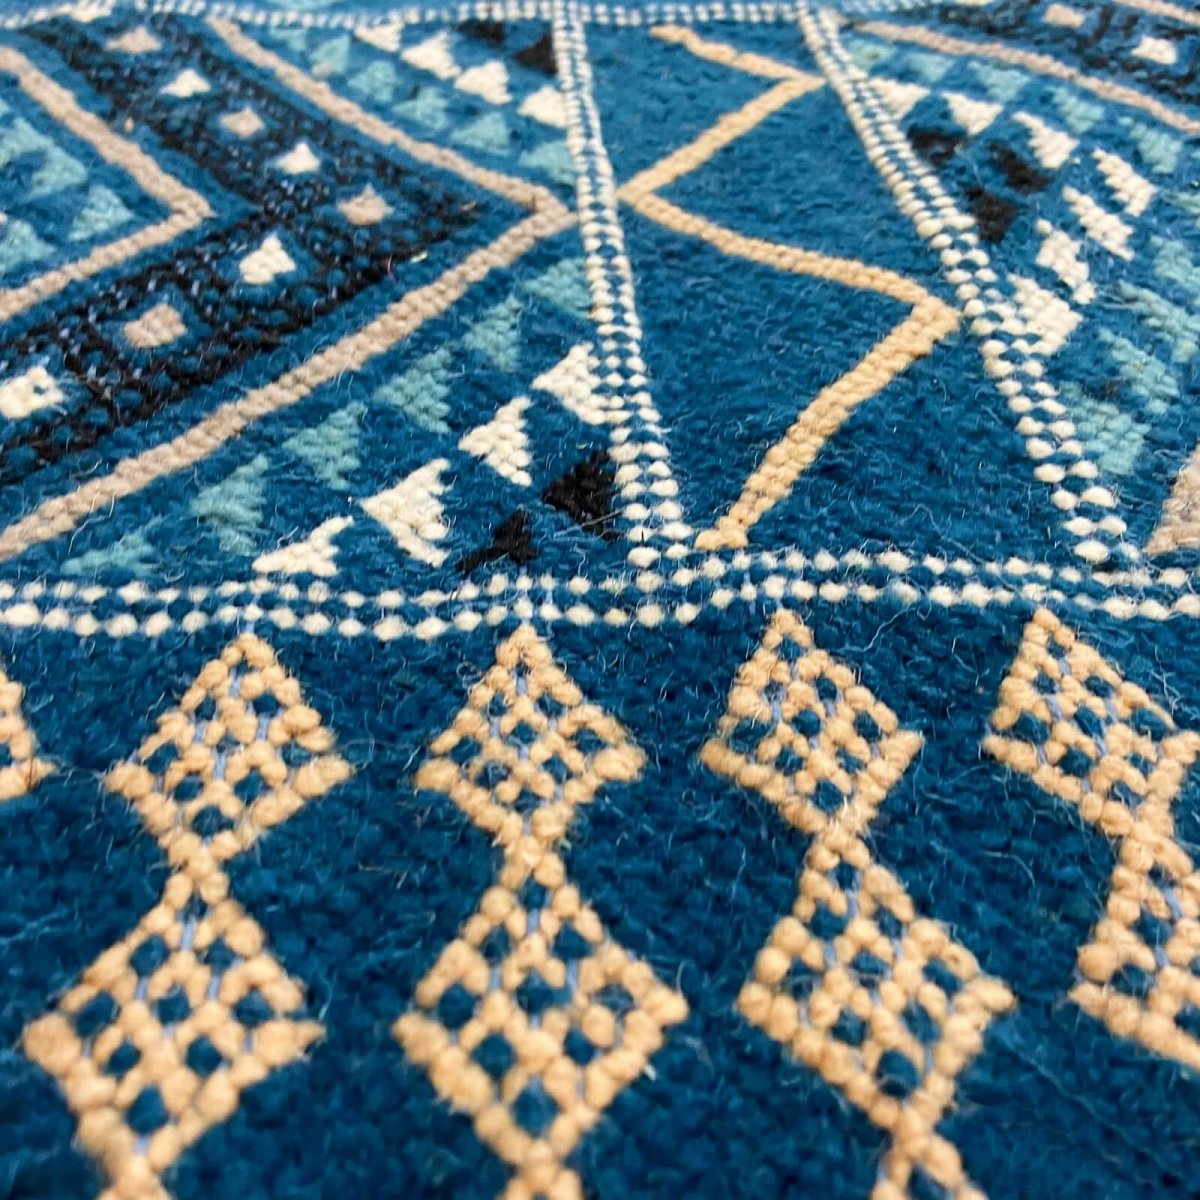 Berber tapijt Vloerkleed Margoum Syphax 200x300 cm Blauw/Wit (Handgeweven, Wol, Tunesië) Tunesisch Margoum Vloerkleed uit de sta